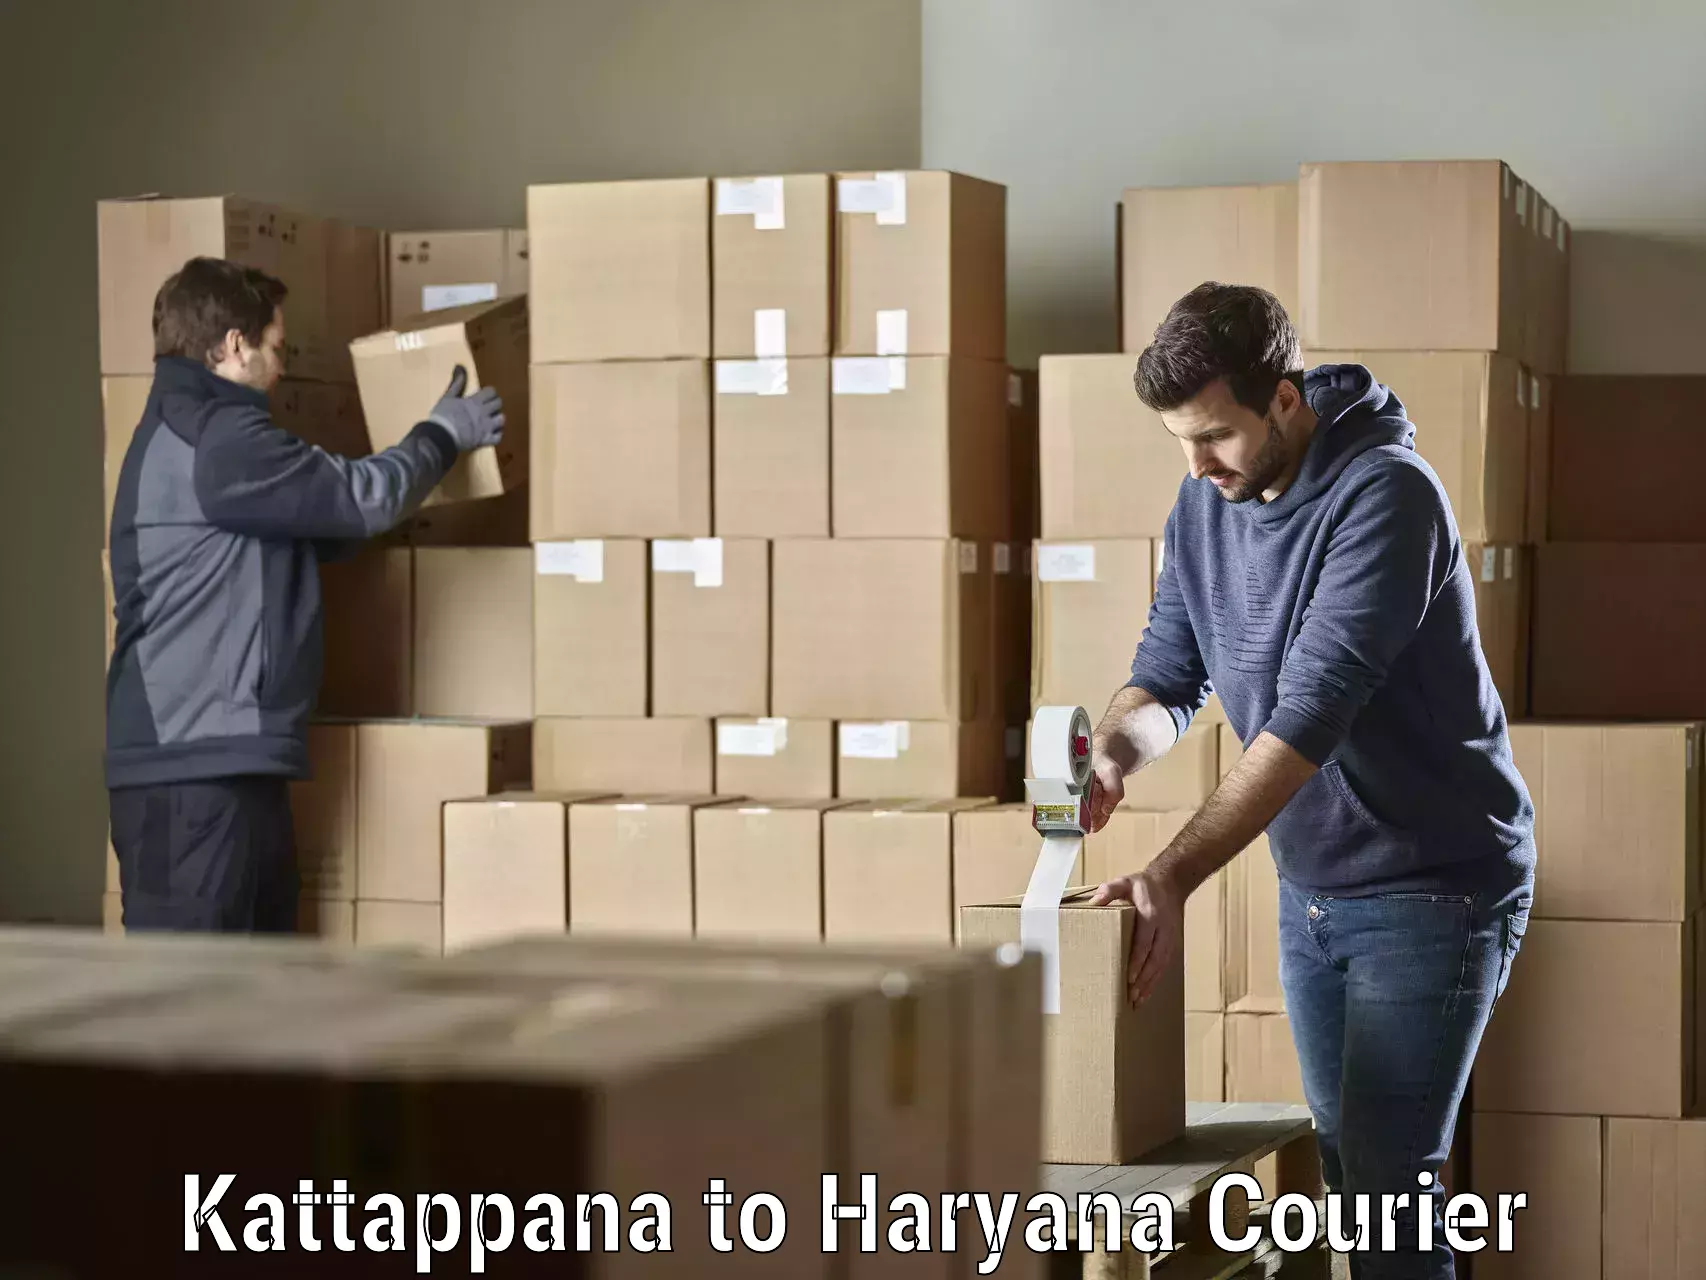 Smart shipping technology Kattappana to Charkhi Dadri